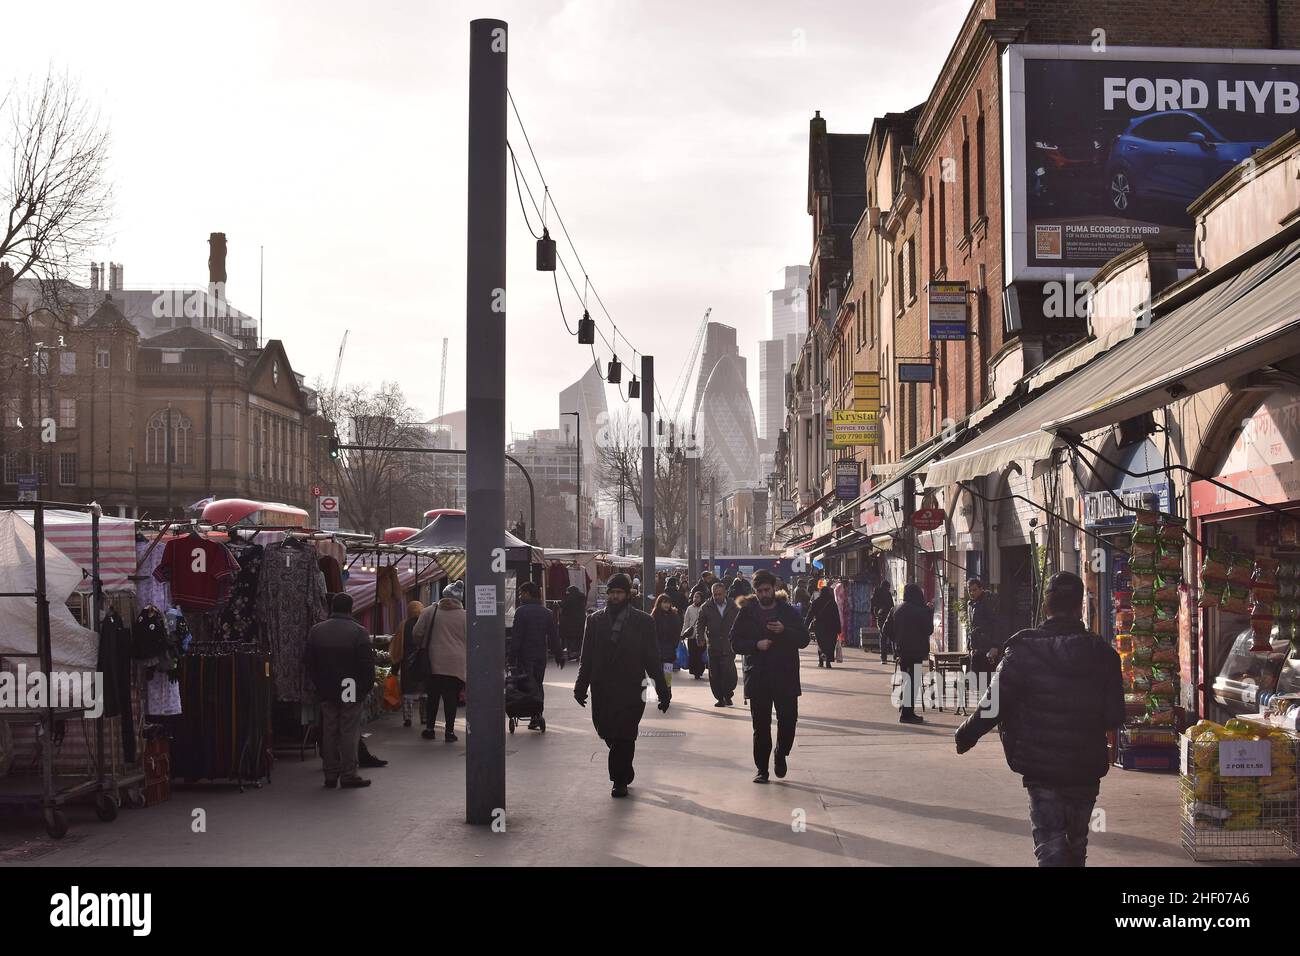 Via con gli acquirenti, mercato Whitechapel Road nella zona est di Londra, Regno Unito. Foto Stock